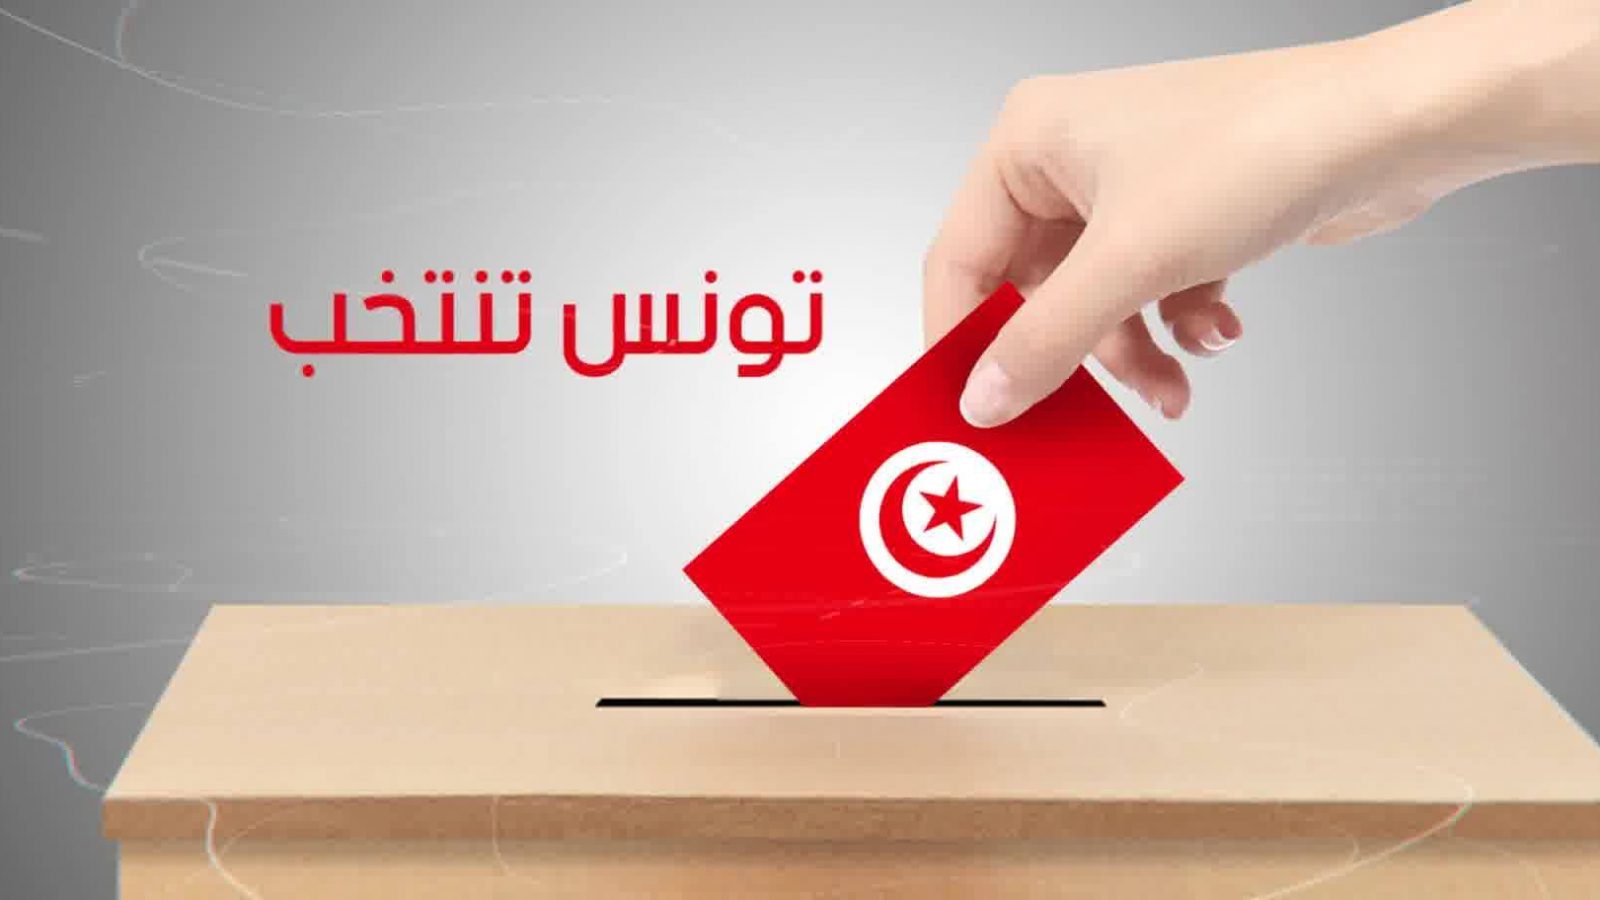 ربع التونسيين لن يصوتوا في التشريعية القادمة حسب استطلاع للرأي